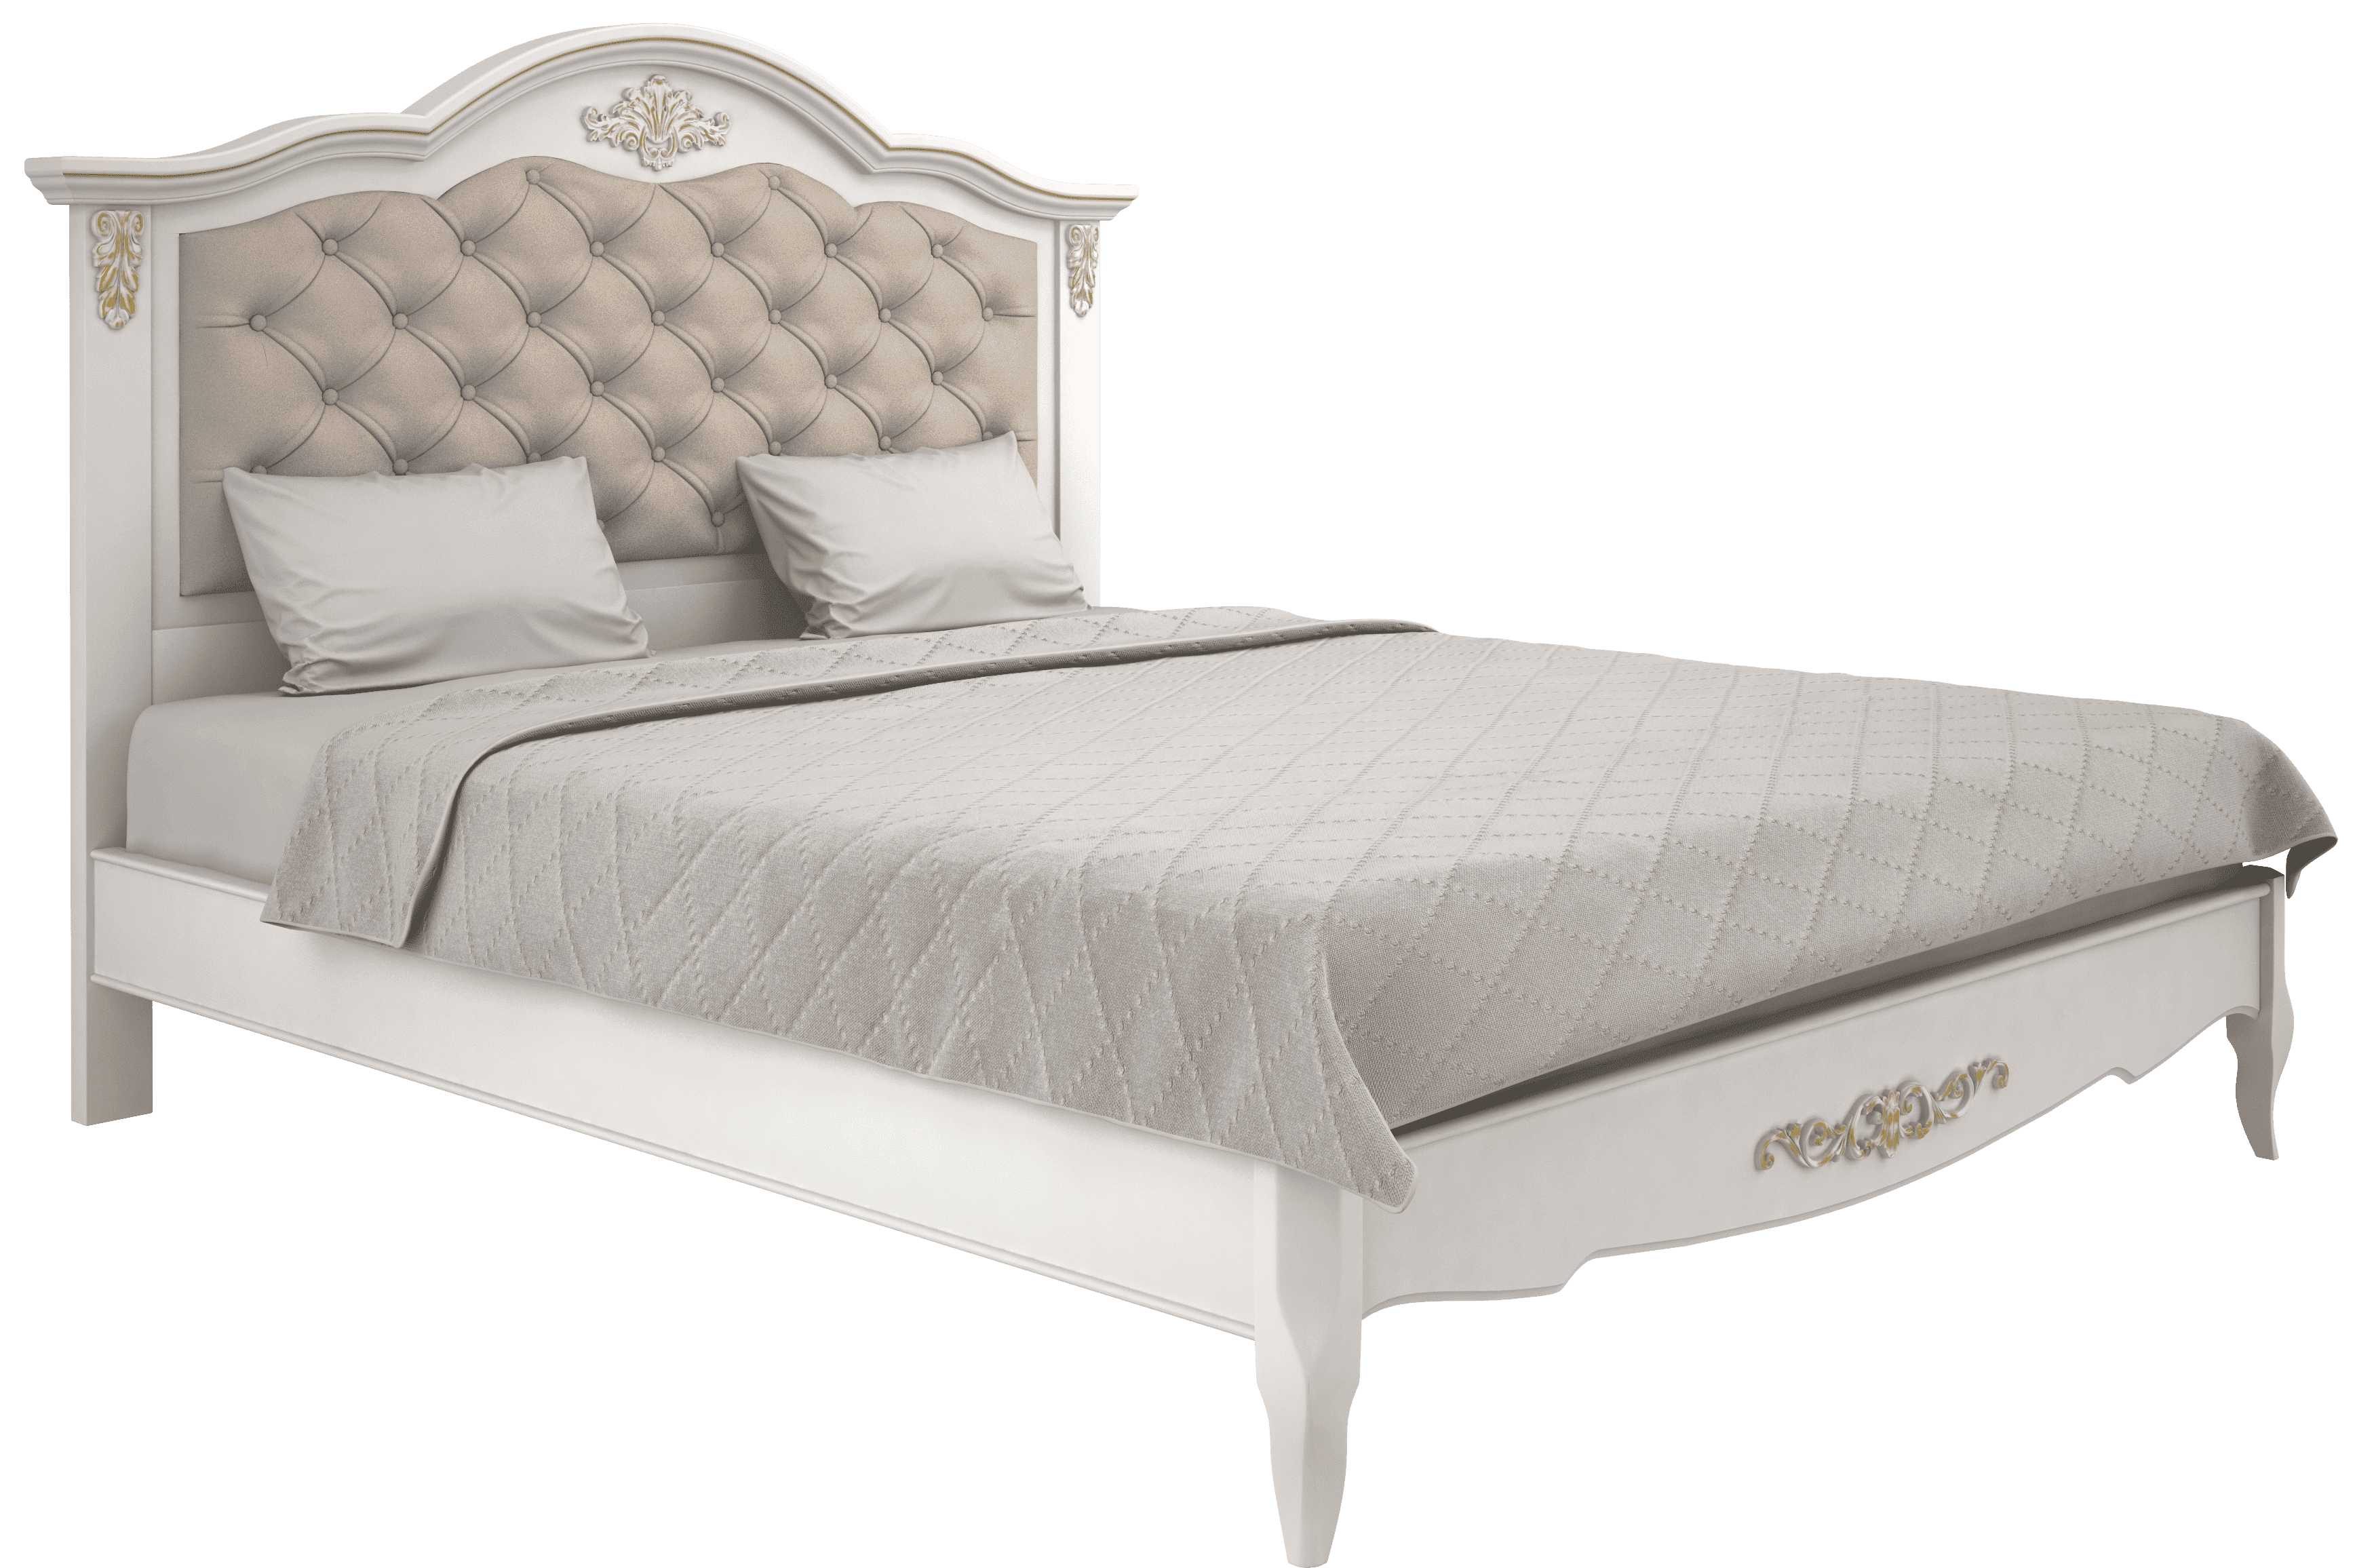 Кровать Aletan Provence, полуторная, 140x200 см, цвет: слоновая кость-золото (B214G)B214G